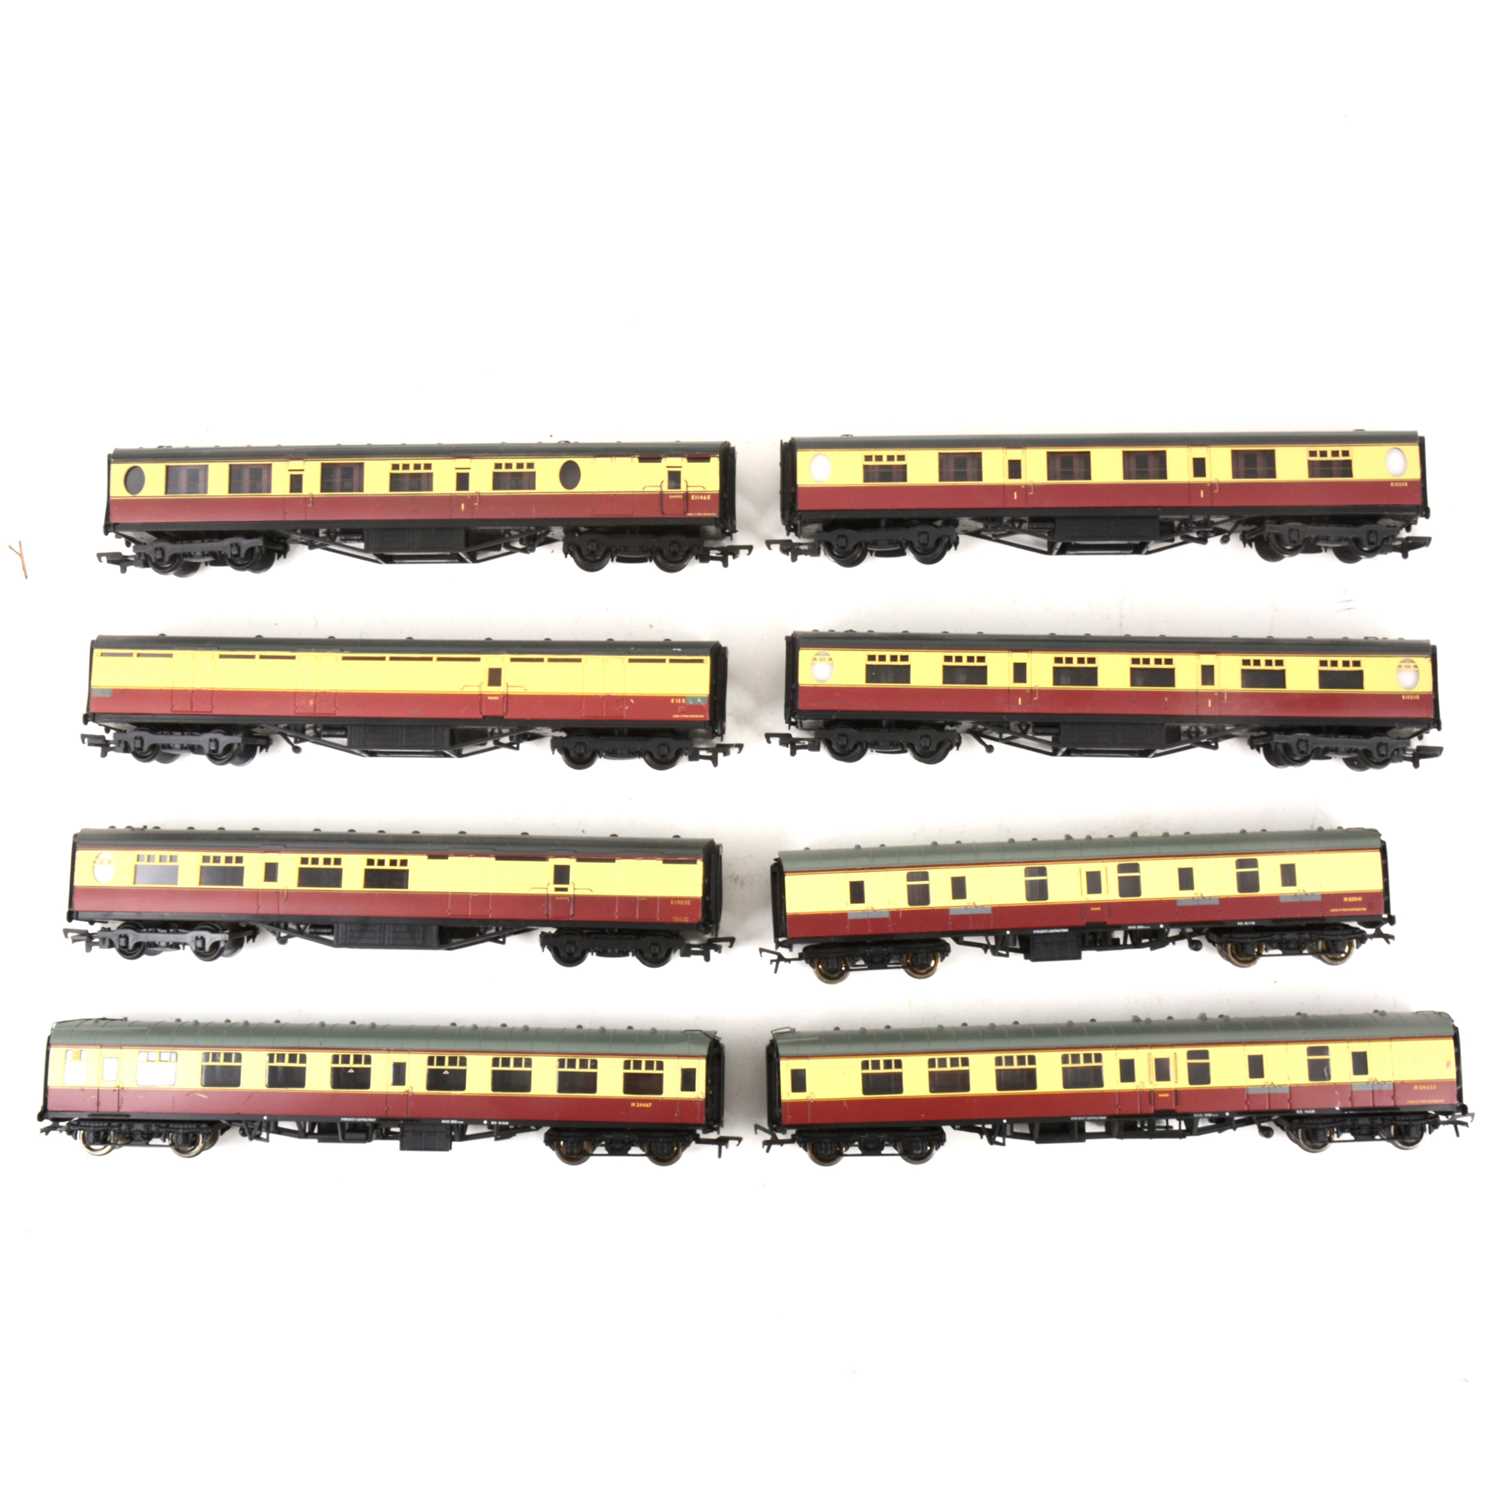 Lot 536 - Thirteen Bachmann OO gauge model railway passenger coaches, all loose.